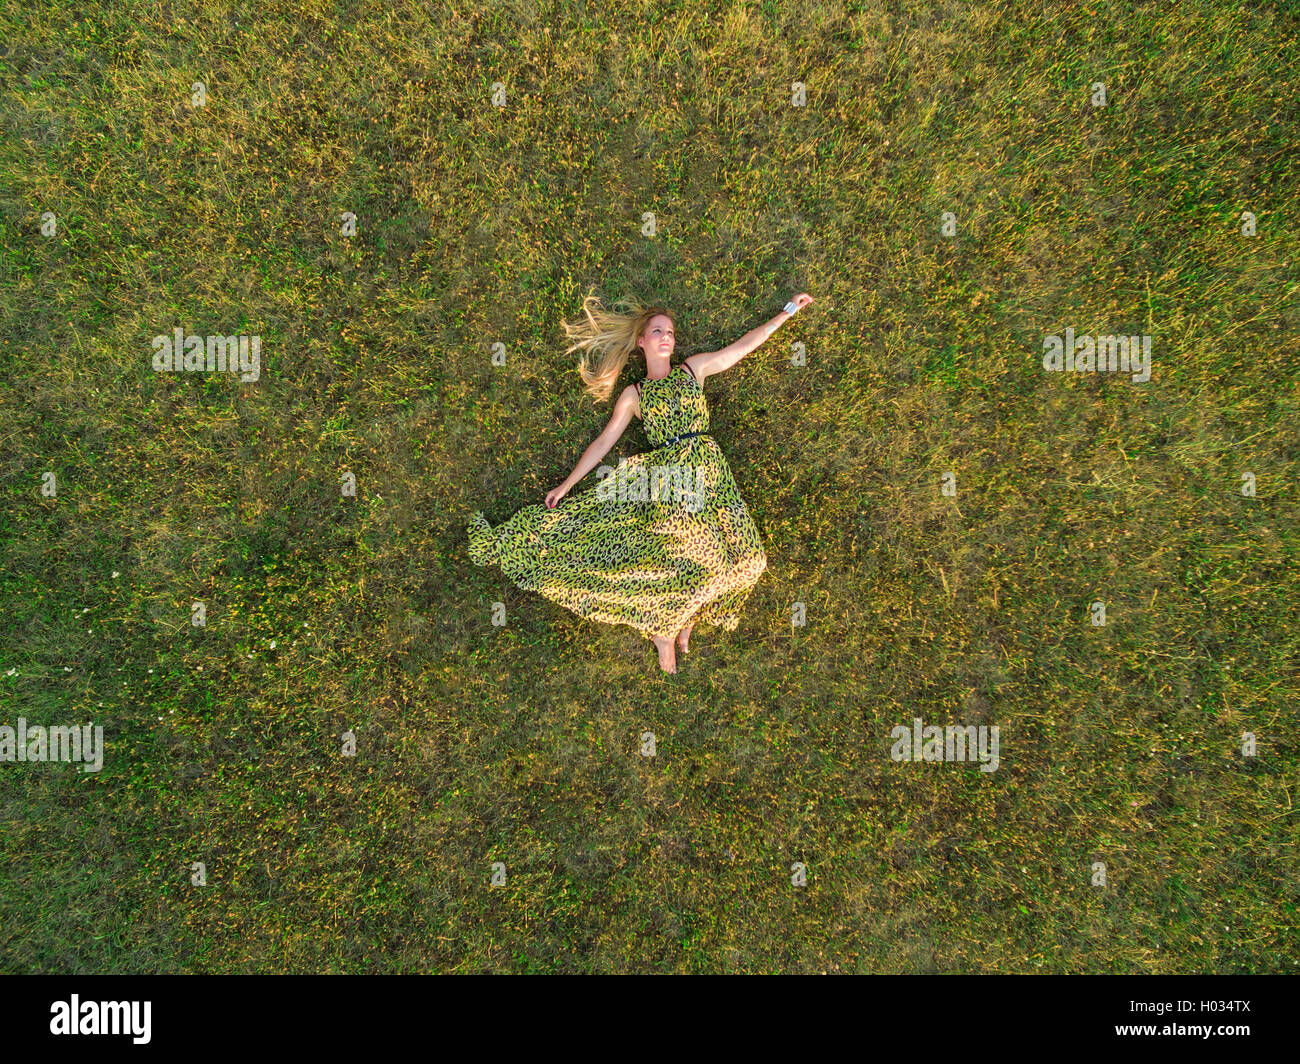 Luftaufnahme der junge Frau in einem grünen Kleid legen Sie sich auf eine Wiese. Stockfoto